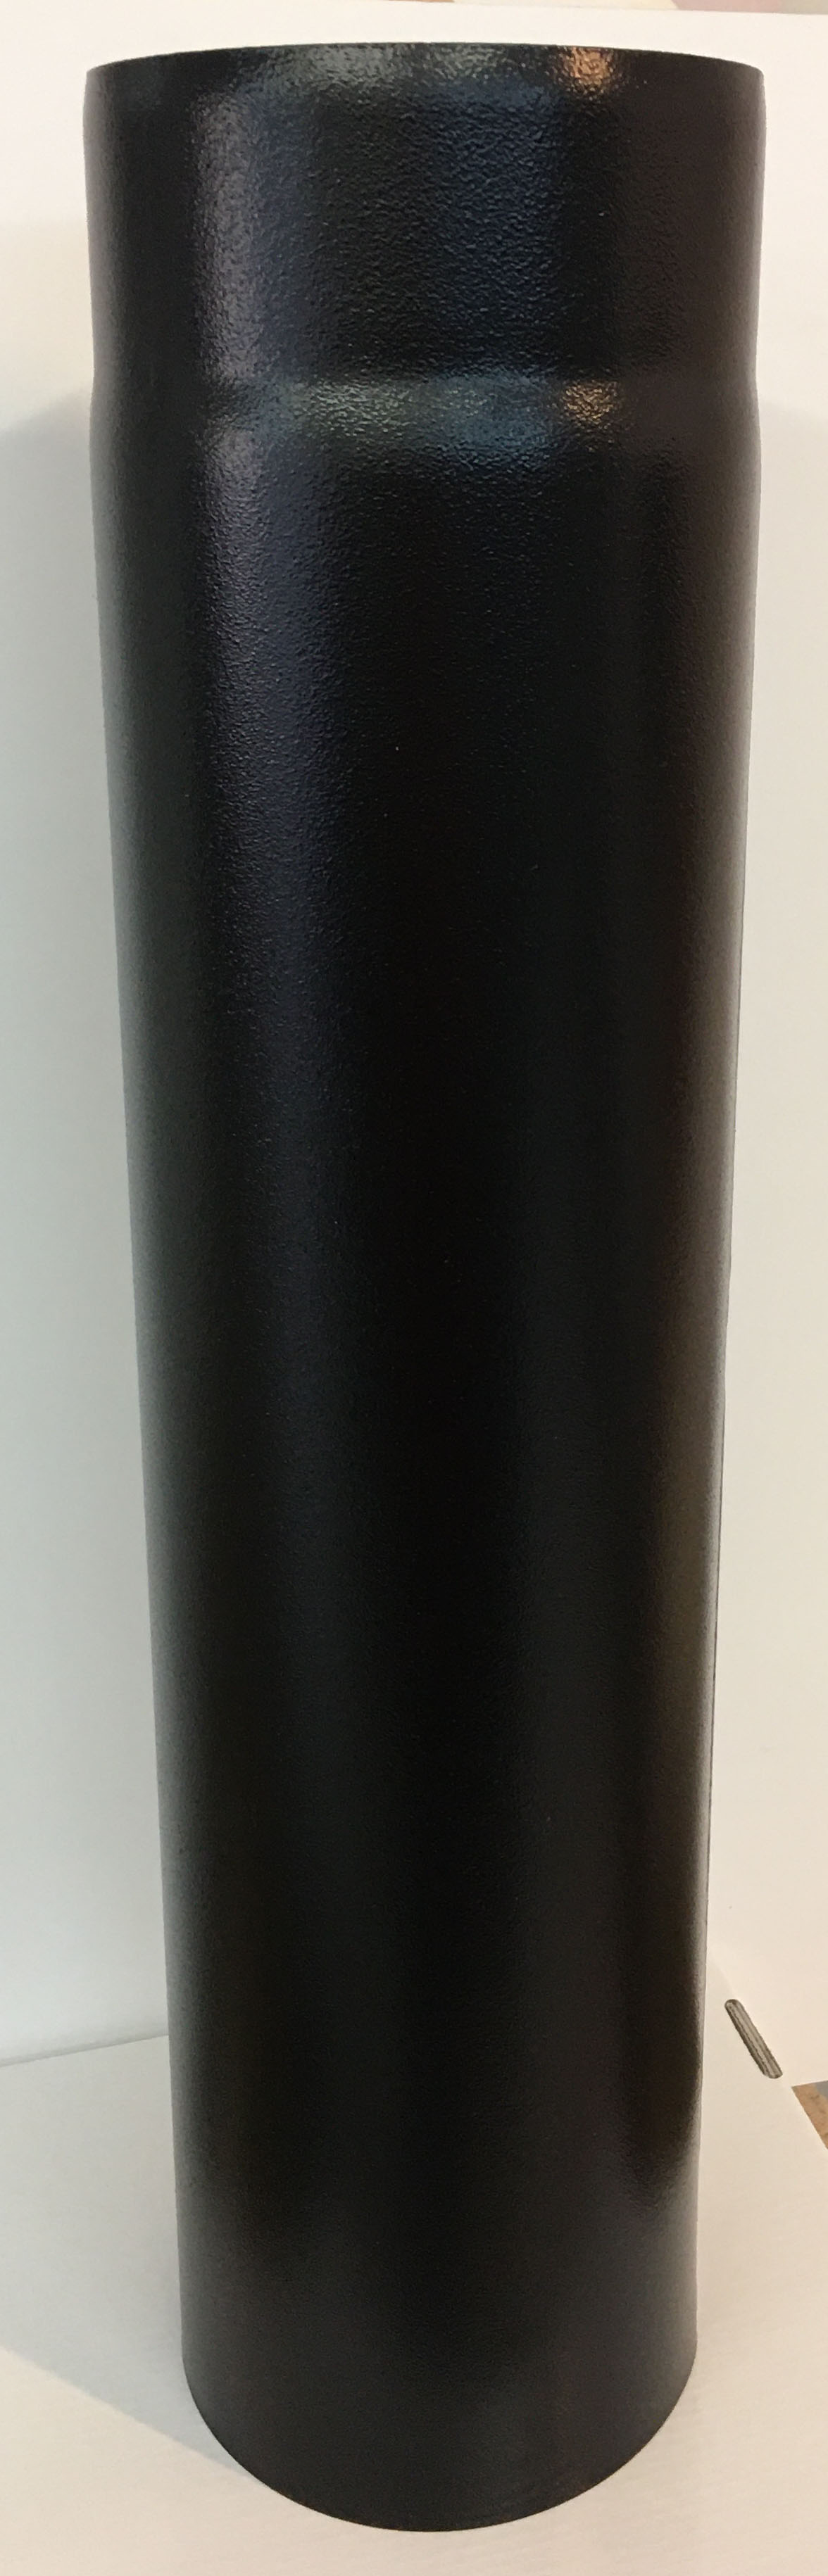 Vastagfalú füstcső, fekete. Átmérője 120 mm, hossza 500 mm